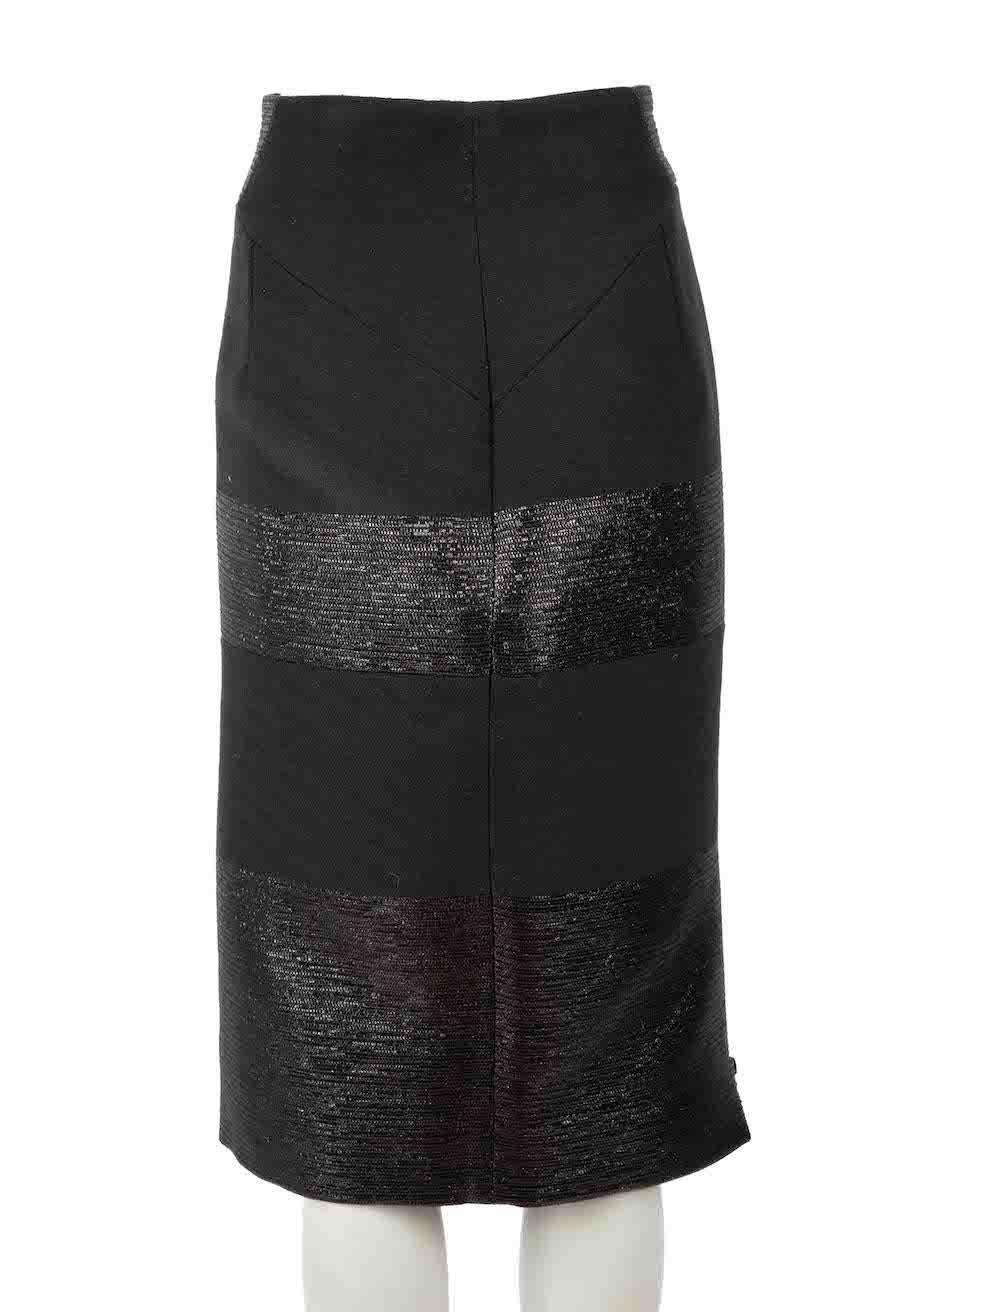 Noir Amanda Wakeley, jupe crayon texturée noire, taille XL en vente